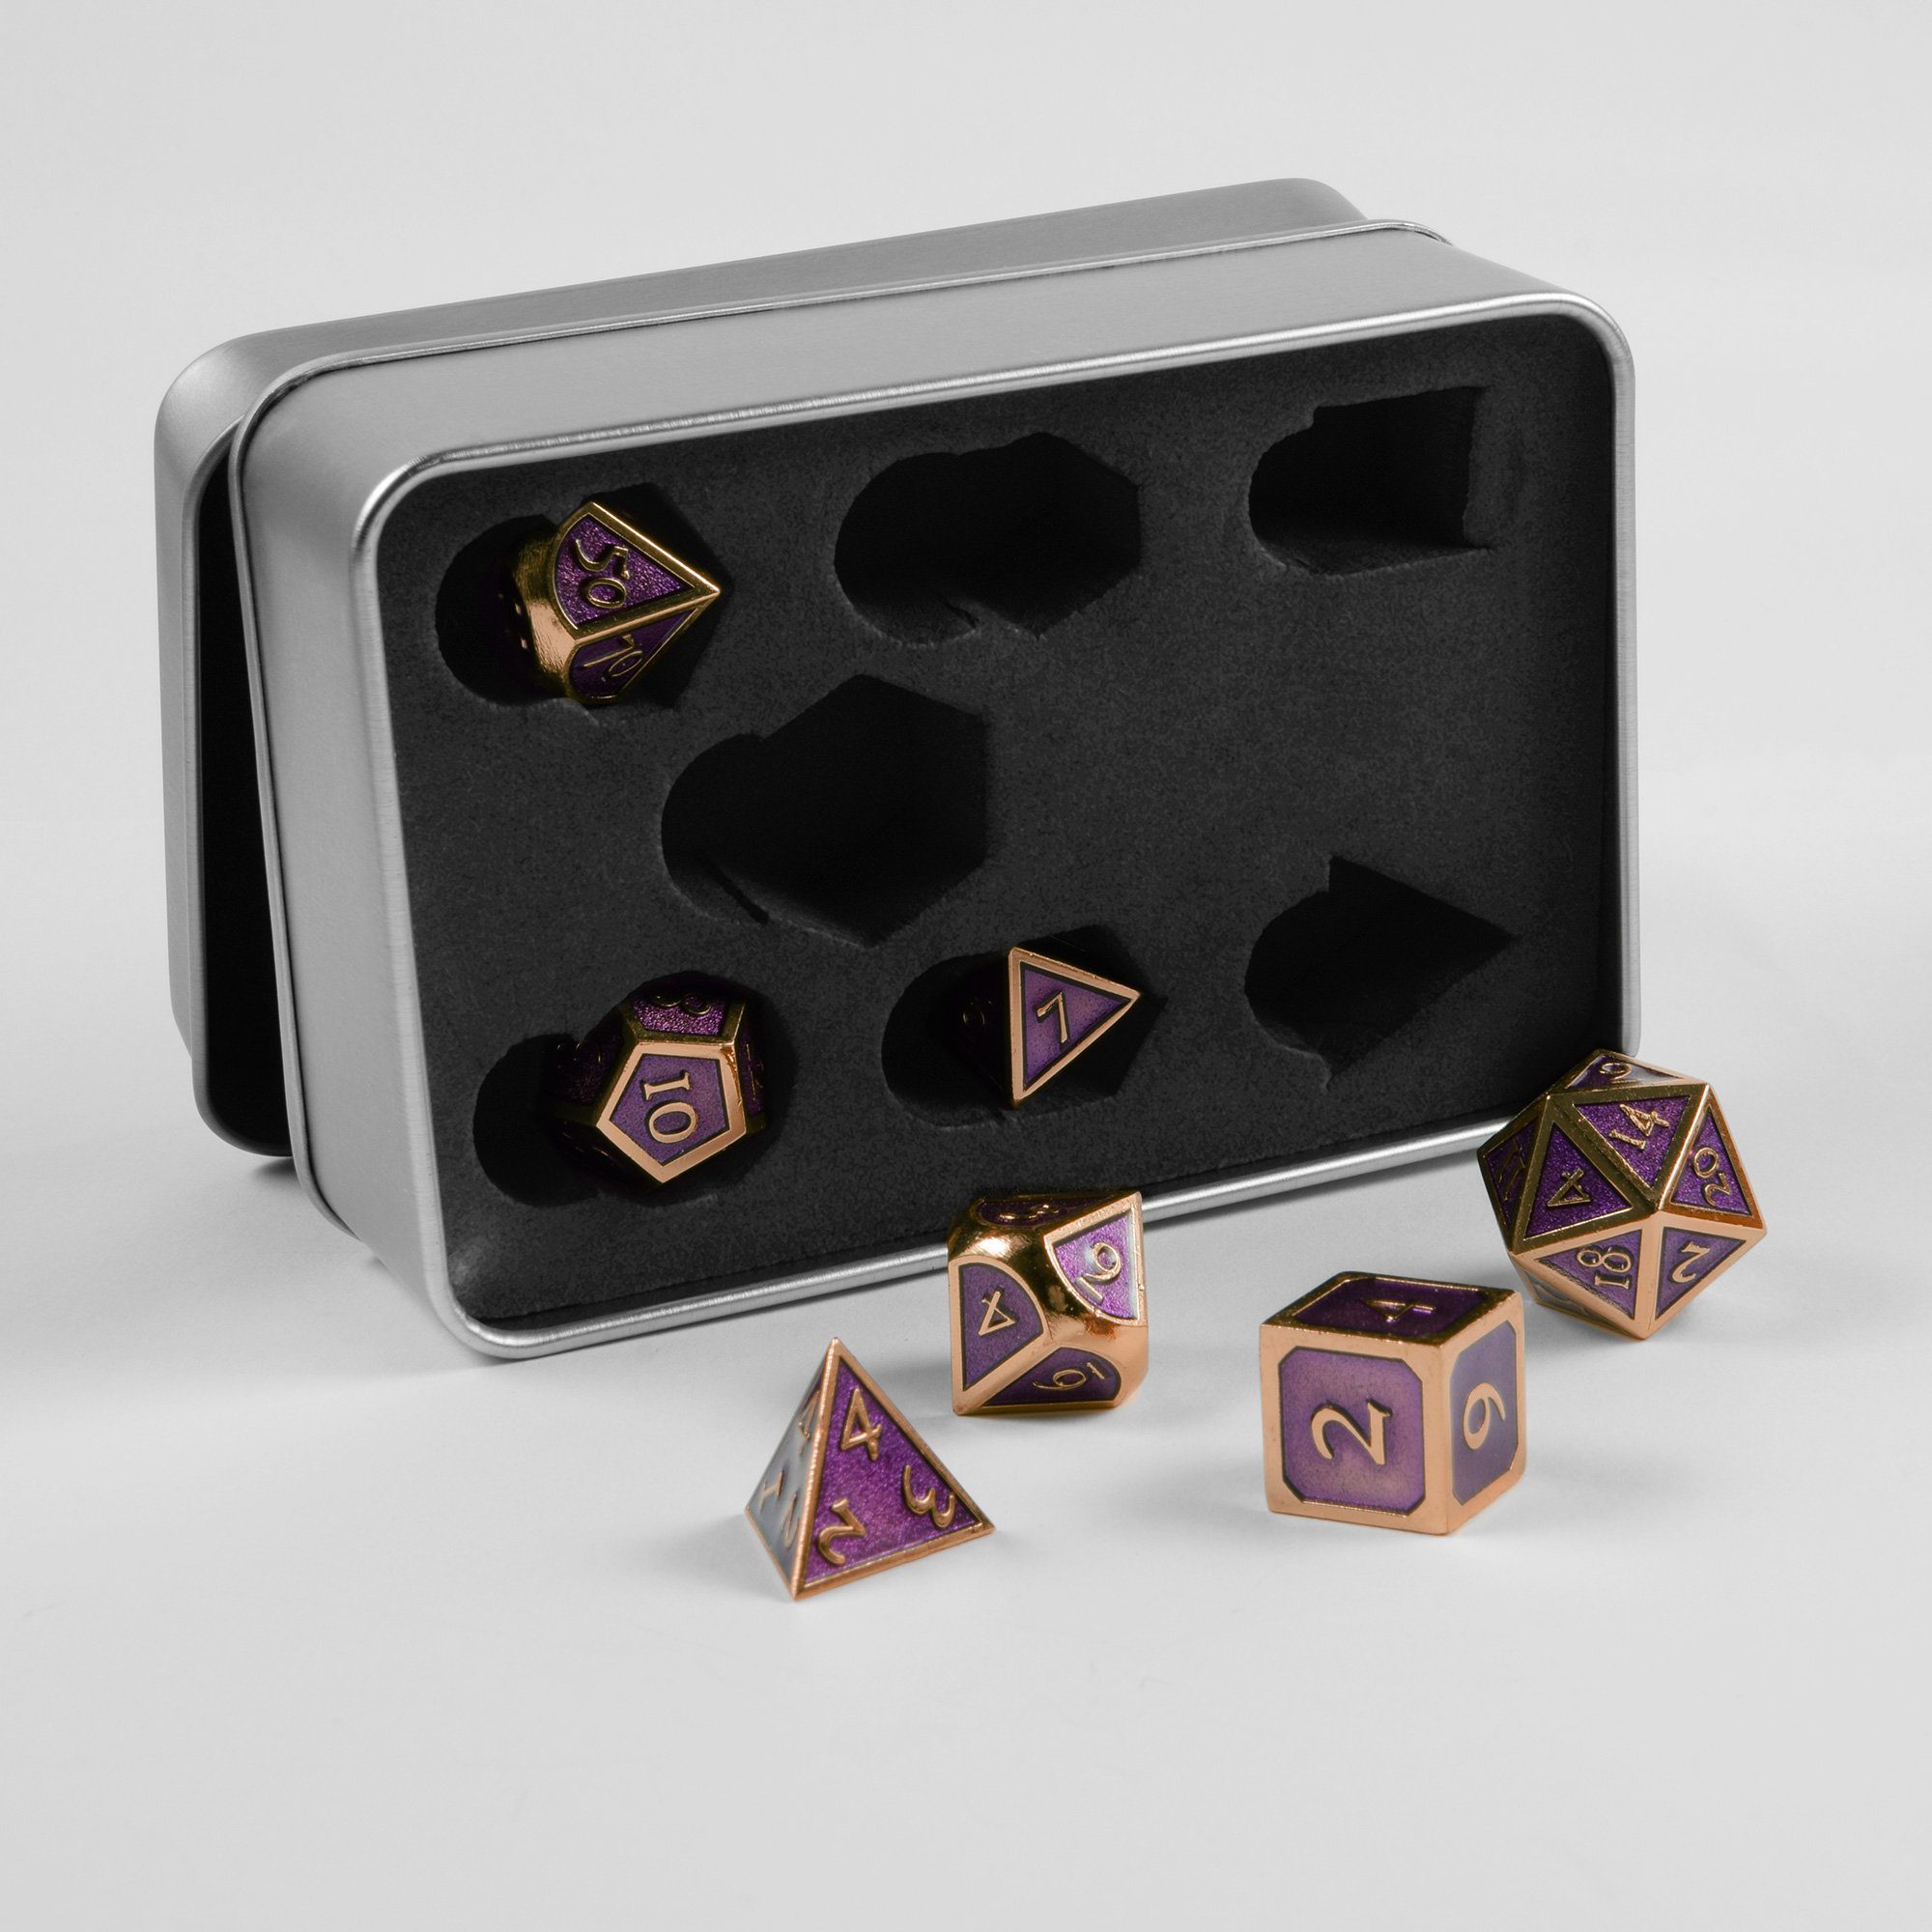 SHIBBY Spielesammlung, 7 polyedrische Metall-DND-Würfel in Steampunk Optik, inkl. Aufbewahrungsbox Rosé/Gold